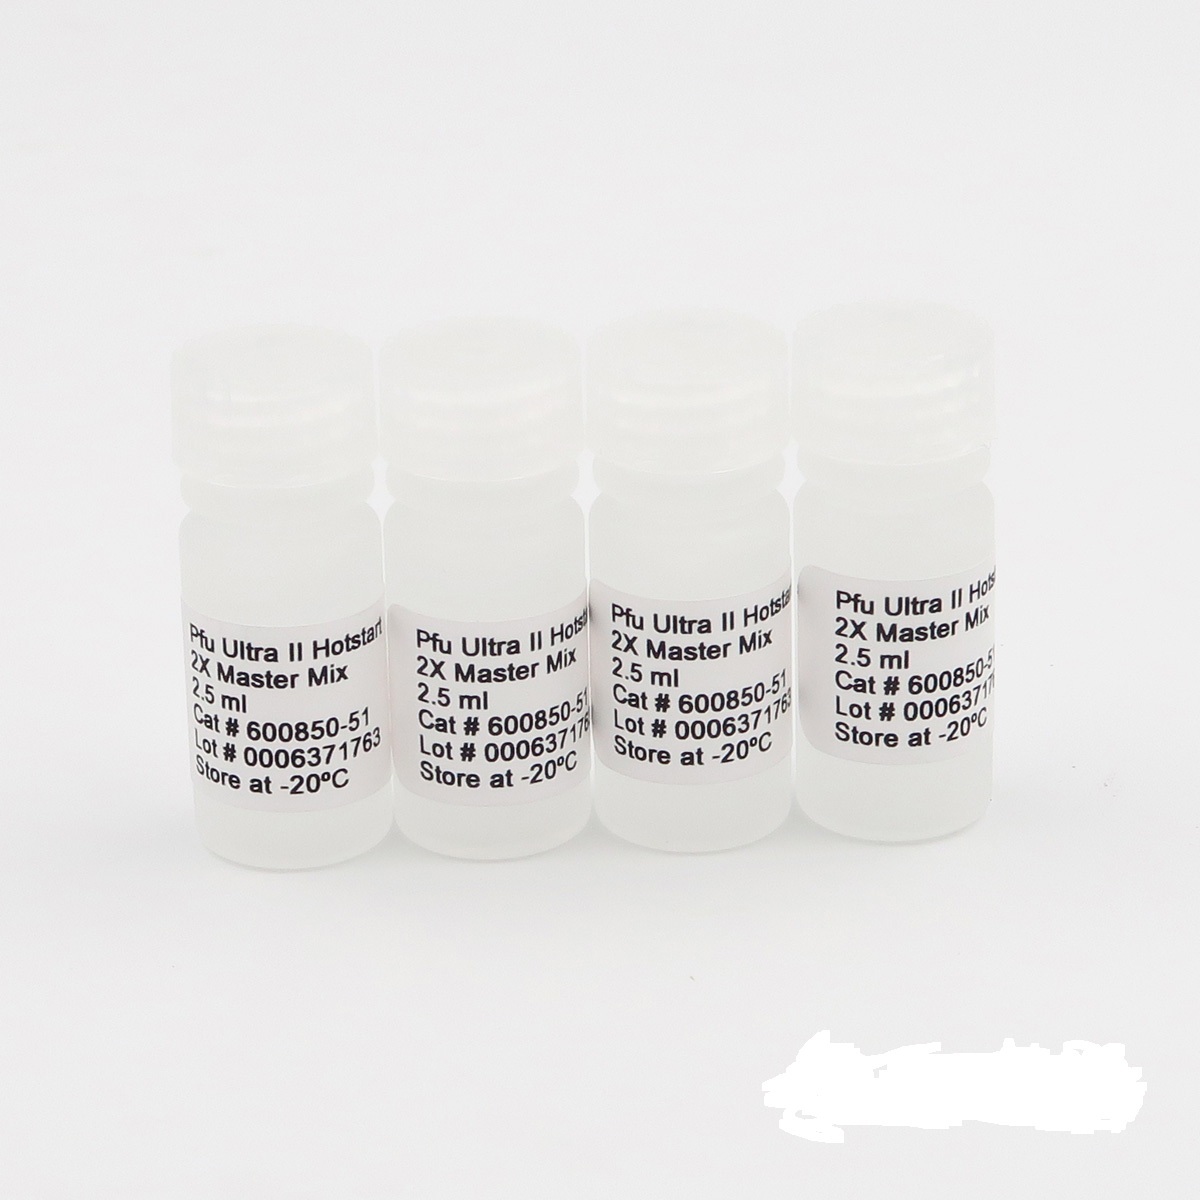 肠致病性大肠杆菌染料法荧光定量PCR试剂盒